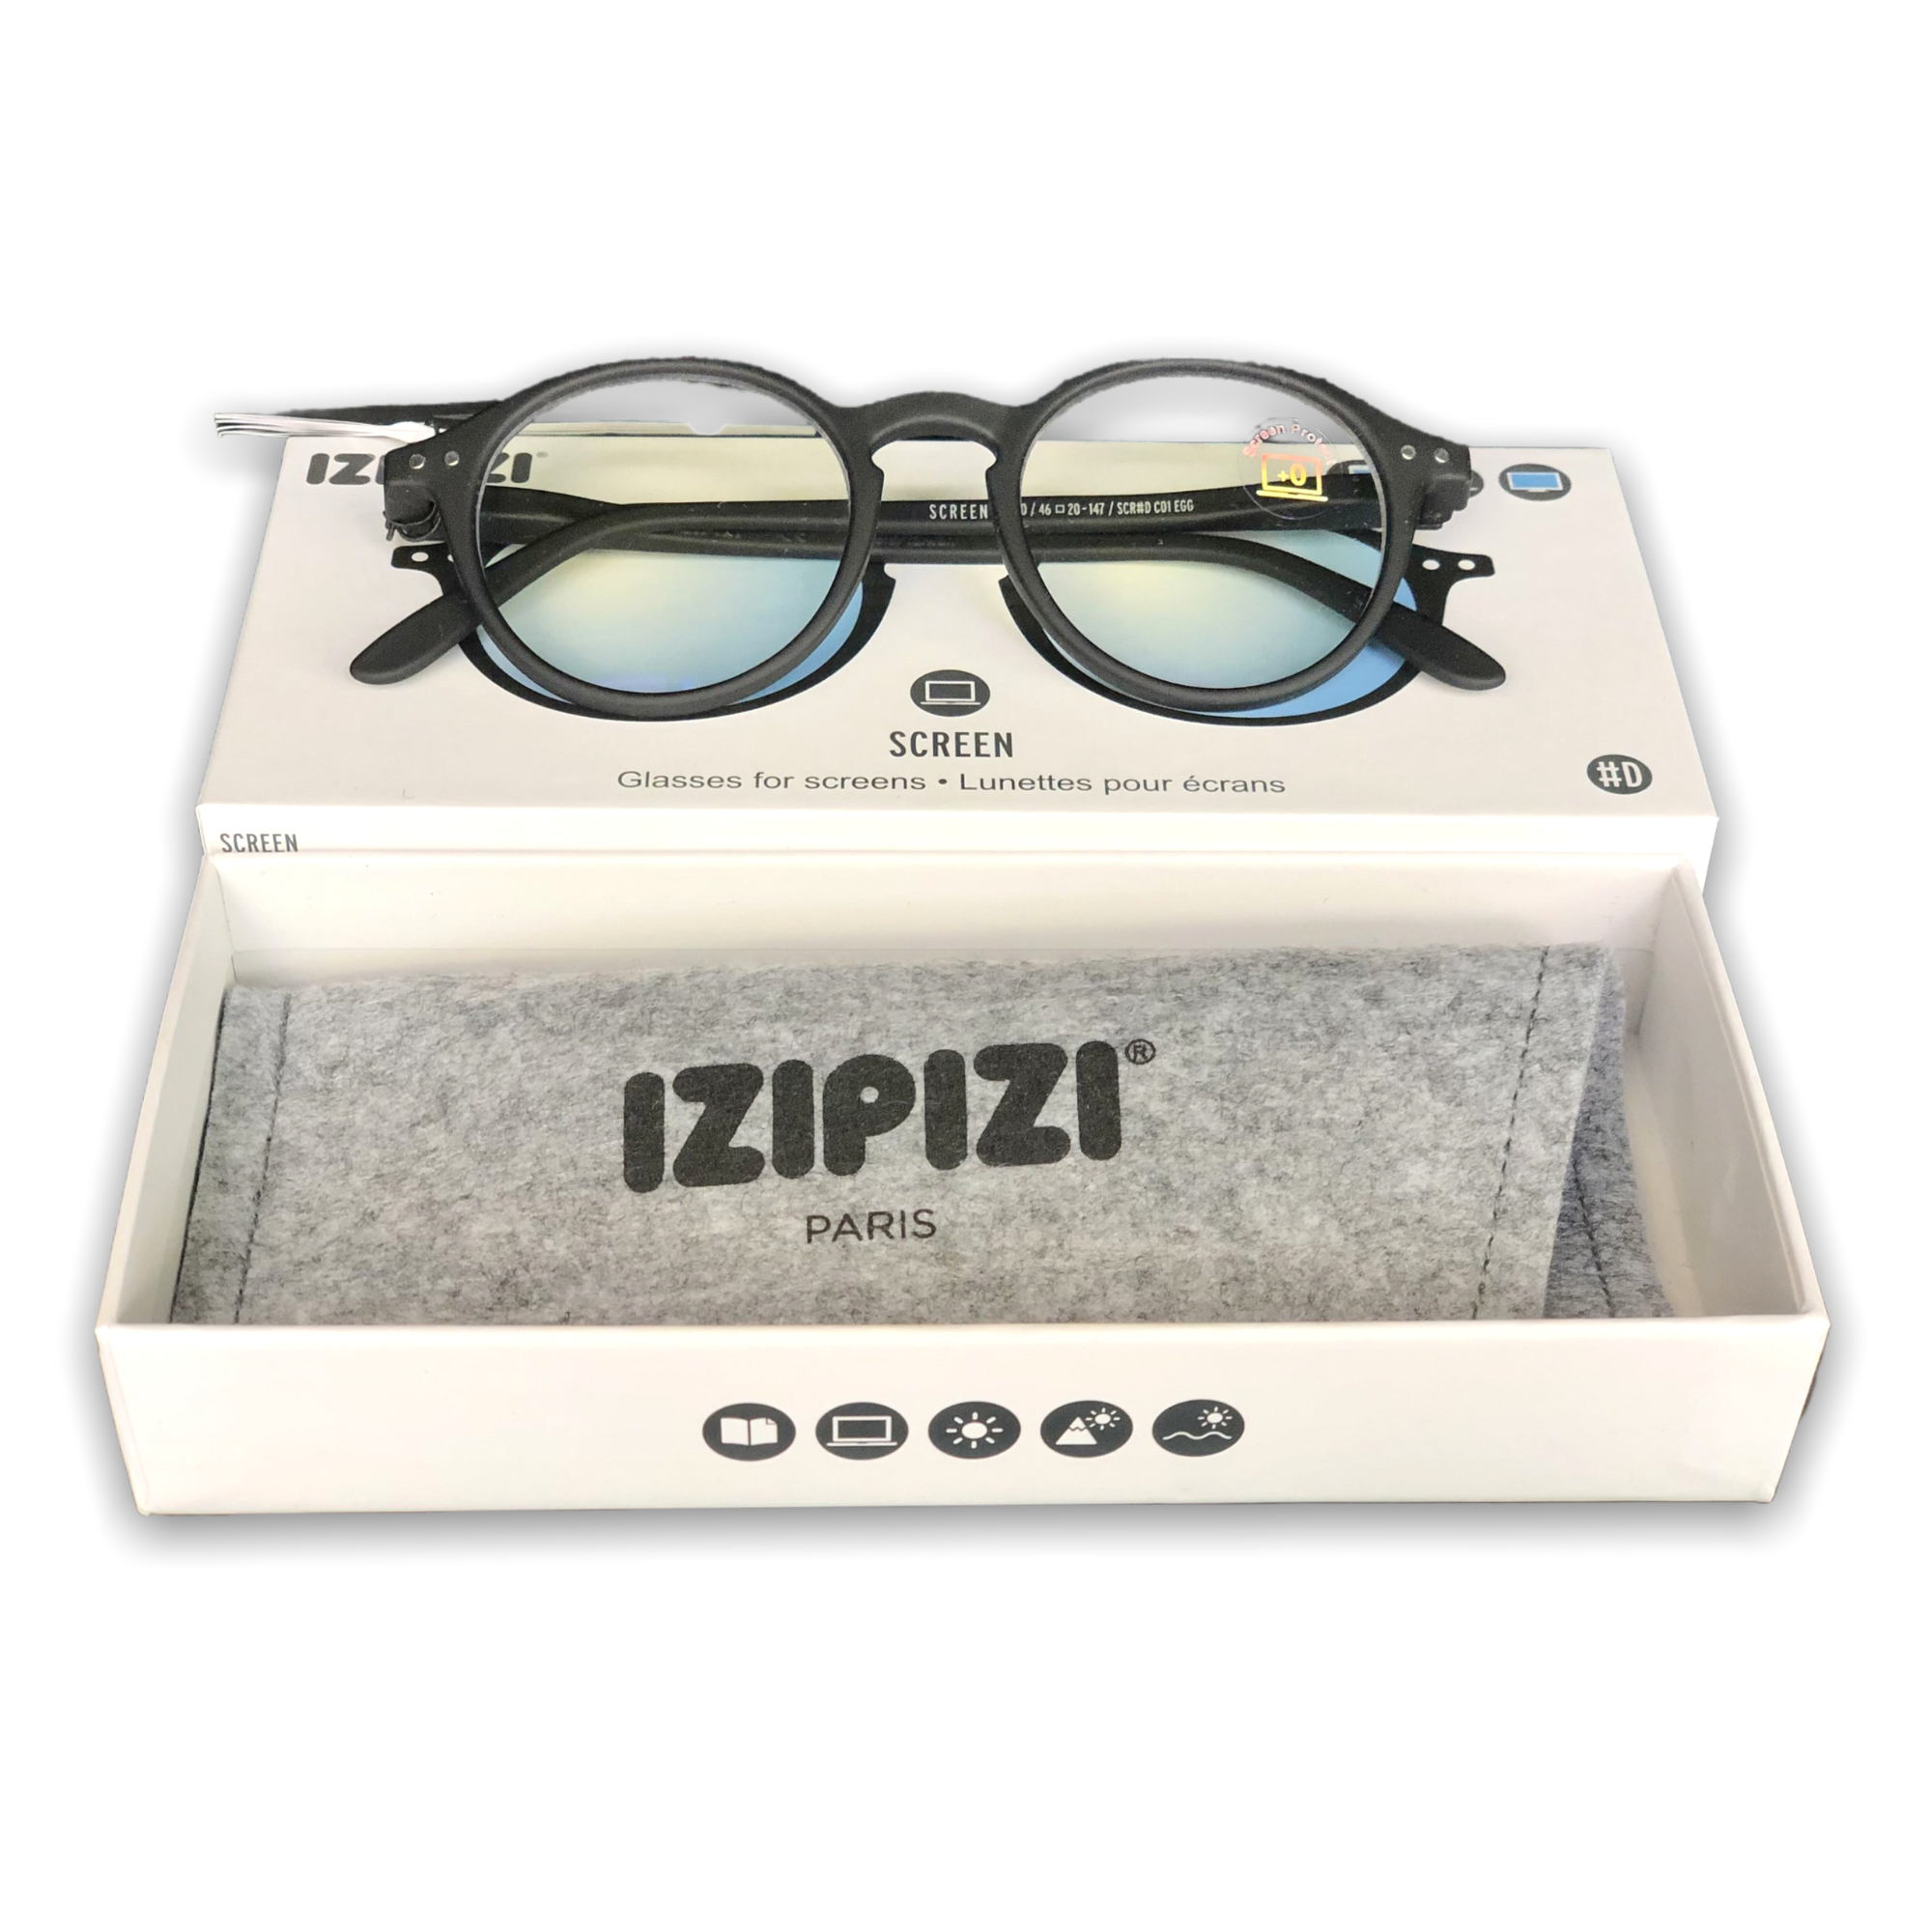 infactory Blaulichtbrille: 2er Pack Bildschirm-Brille mit Blaulicht-Filter,  2,0 Dioptrien (Bildschirm Lesebrille, Augenschonende Bildschirm Brillen